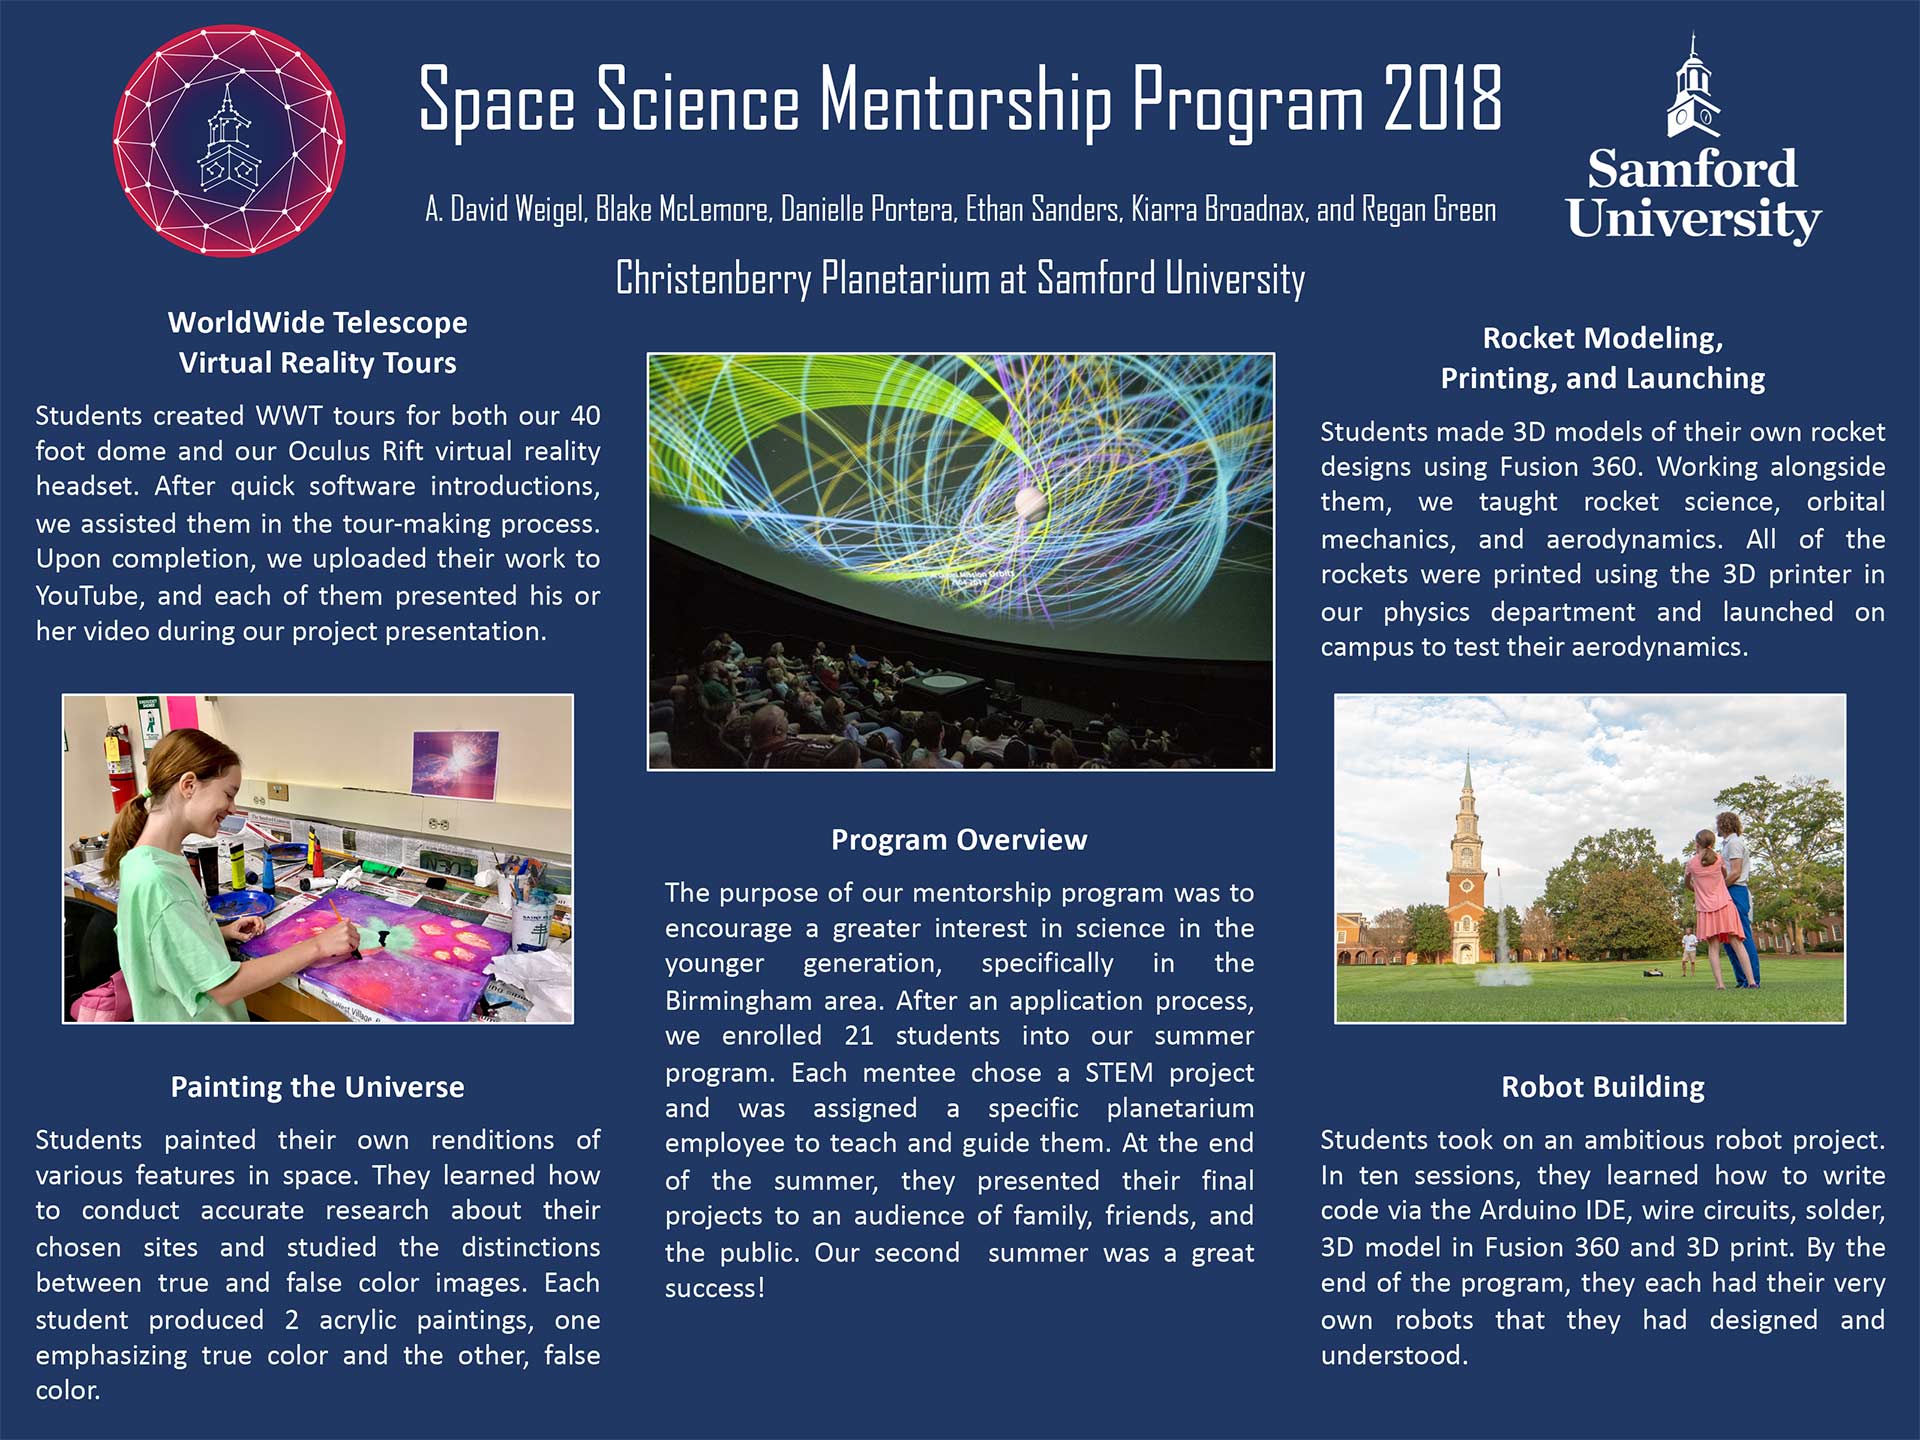 Space Science Mentorship Program Achievements